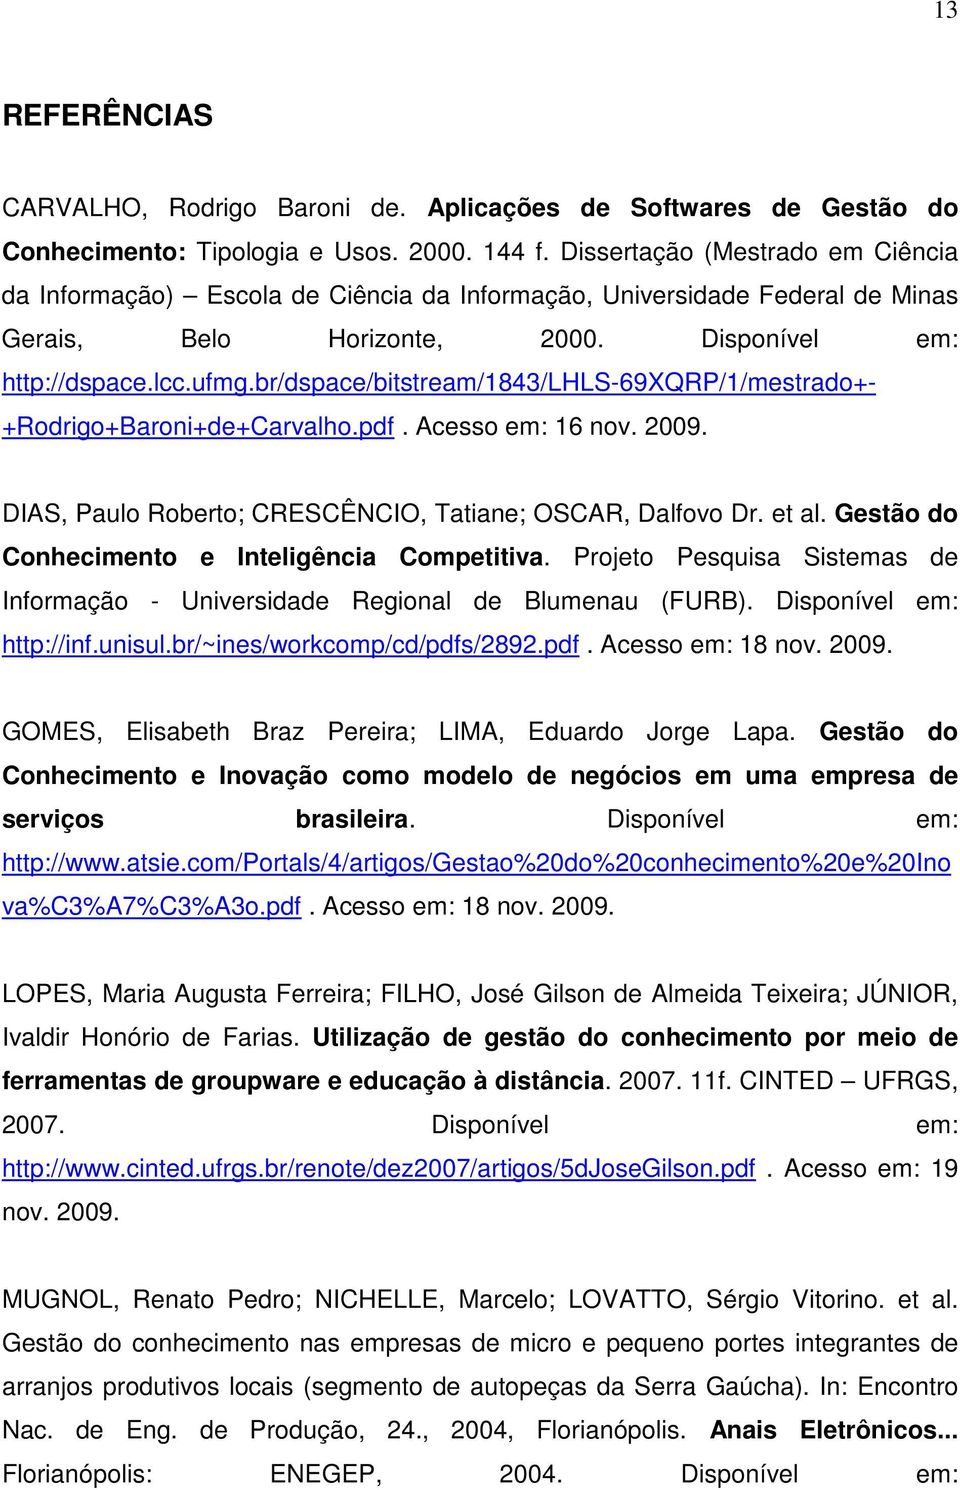 br/dspace/bitstream/1843/lhls-69xqrp/1/mestrado+- +Rodrigo+Baroni+de+Carvalho.pdf. Acesso em: 16 nov. 2009. DIAS, Paulo Roberto; CRESCÊNCIO, Tatiane; OSCAR, Dalfovo Dr. et al.